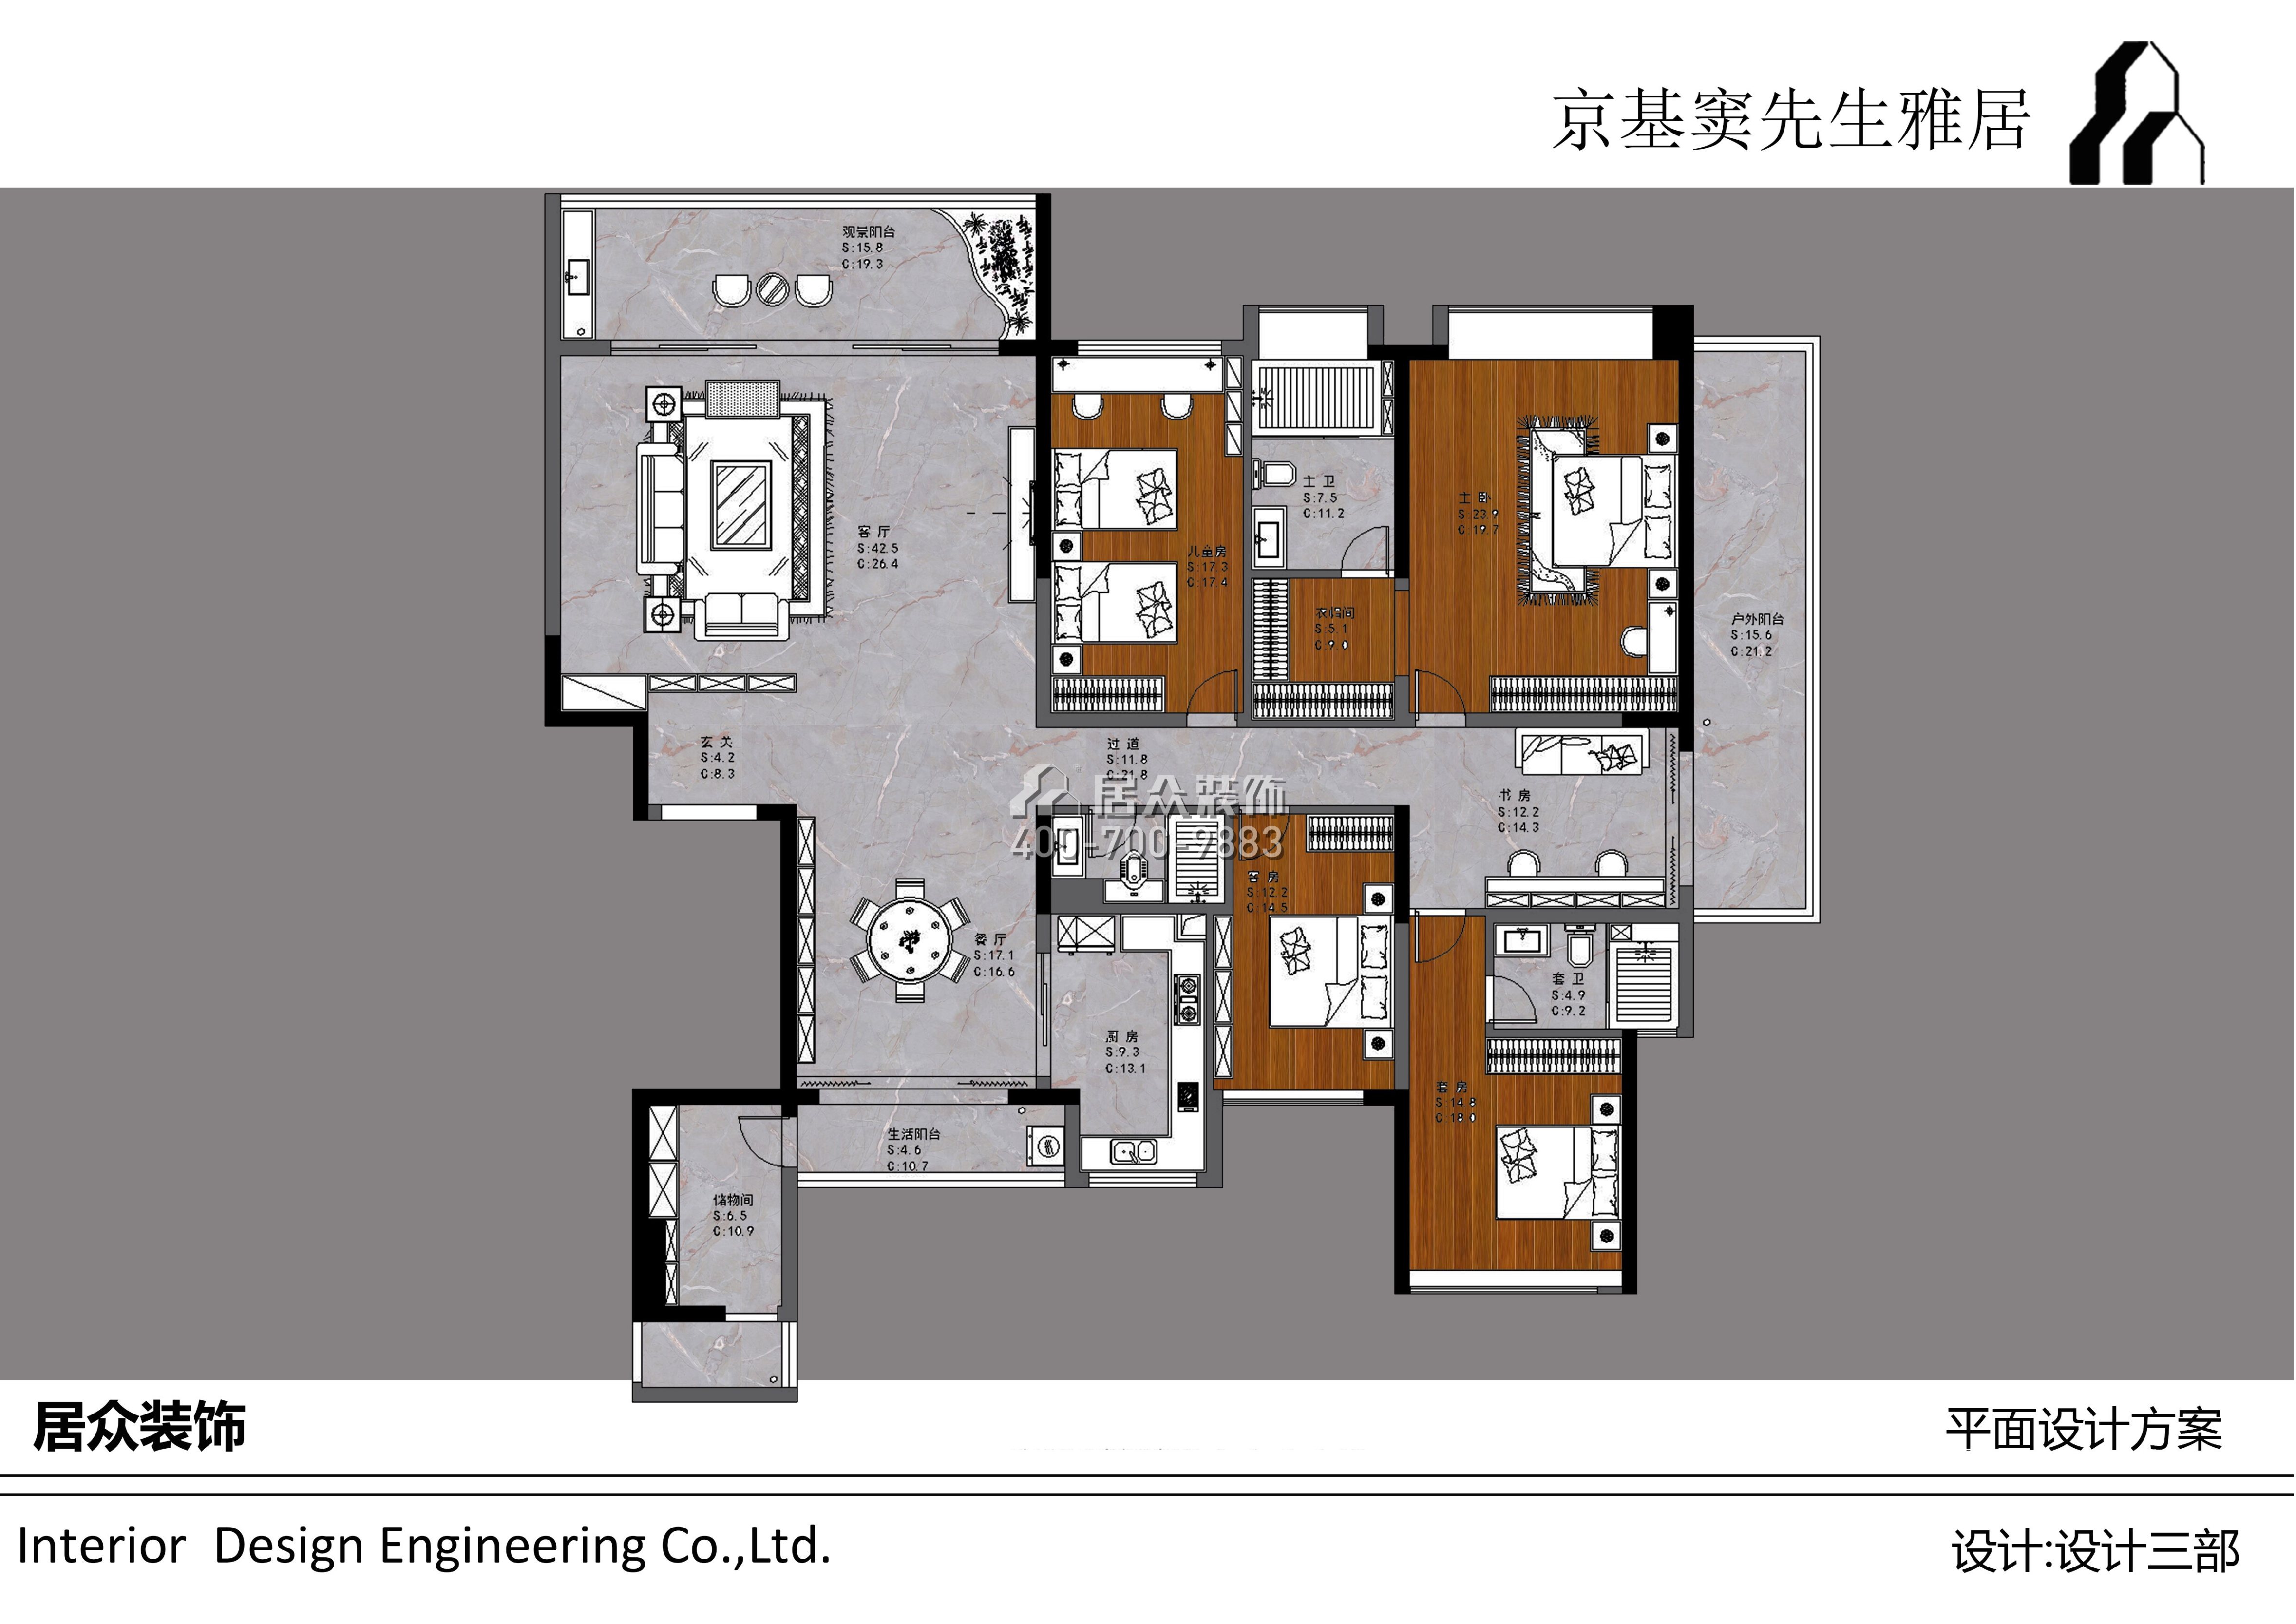 西粵京基城三期218平方米現代簡約風格平層戶型戶型圖裝修效果圖